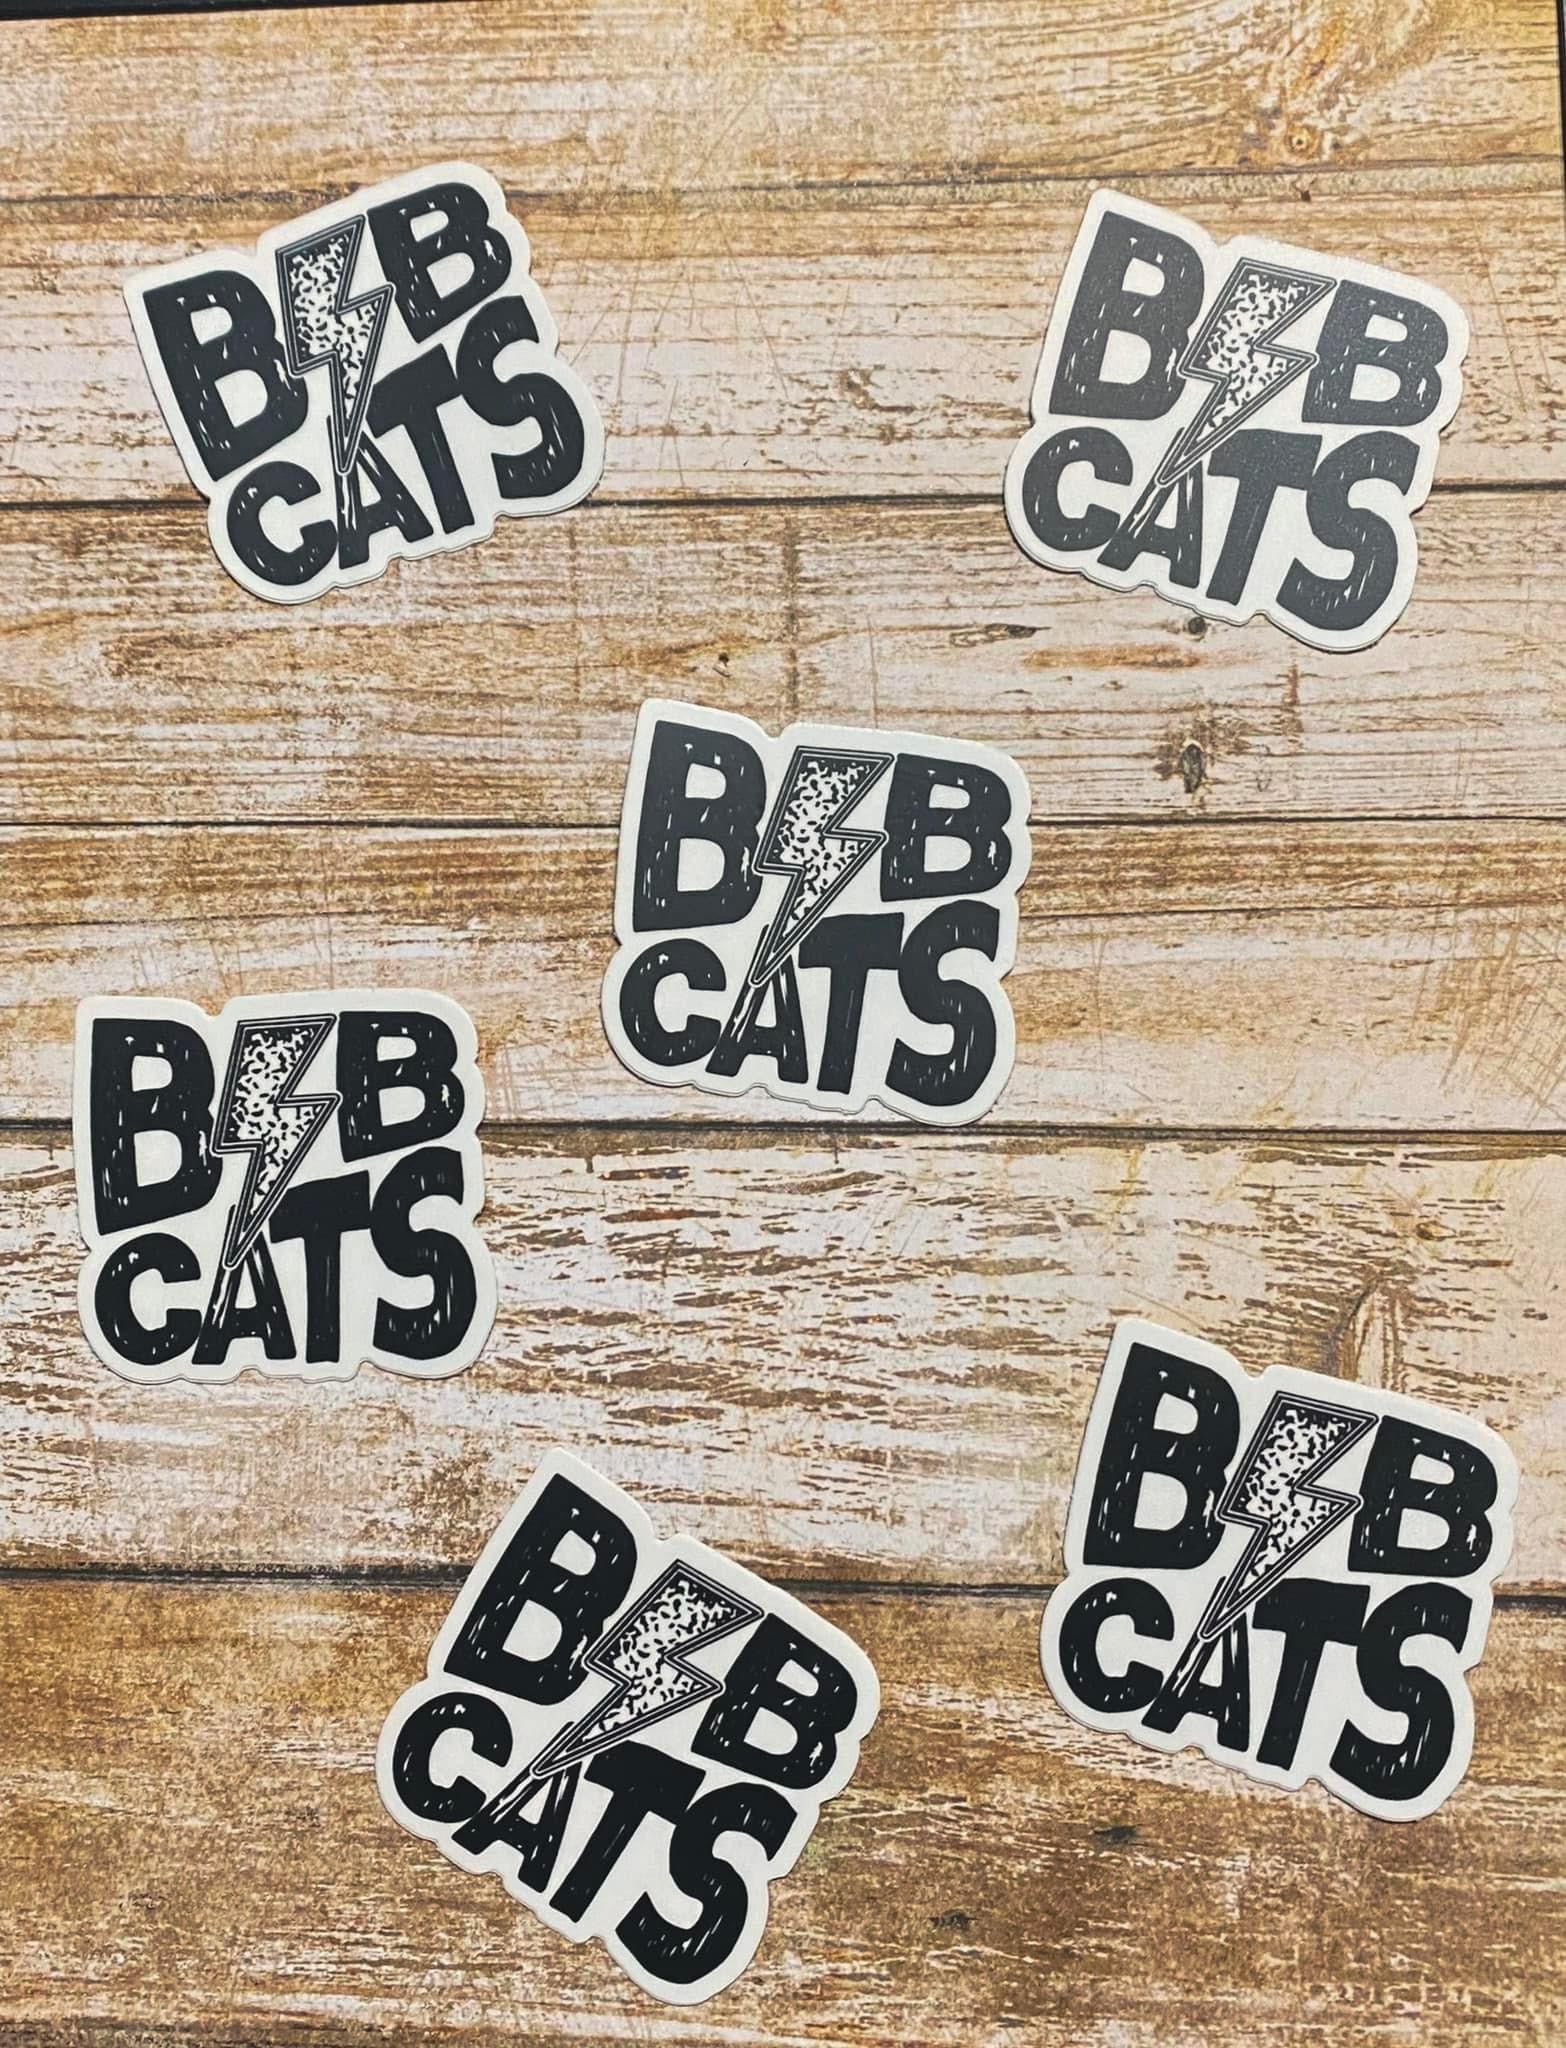 Bobcats Lightning Sticker